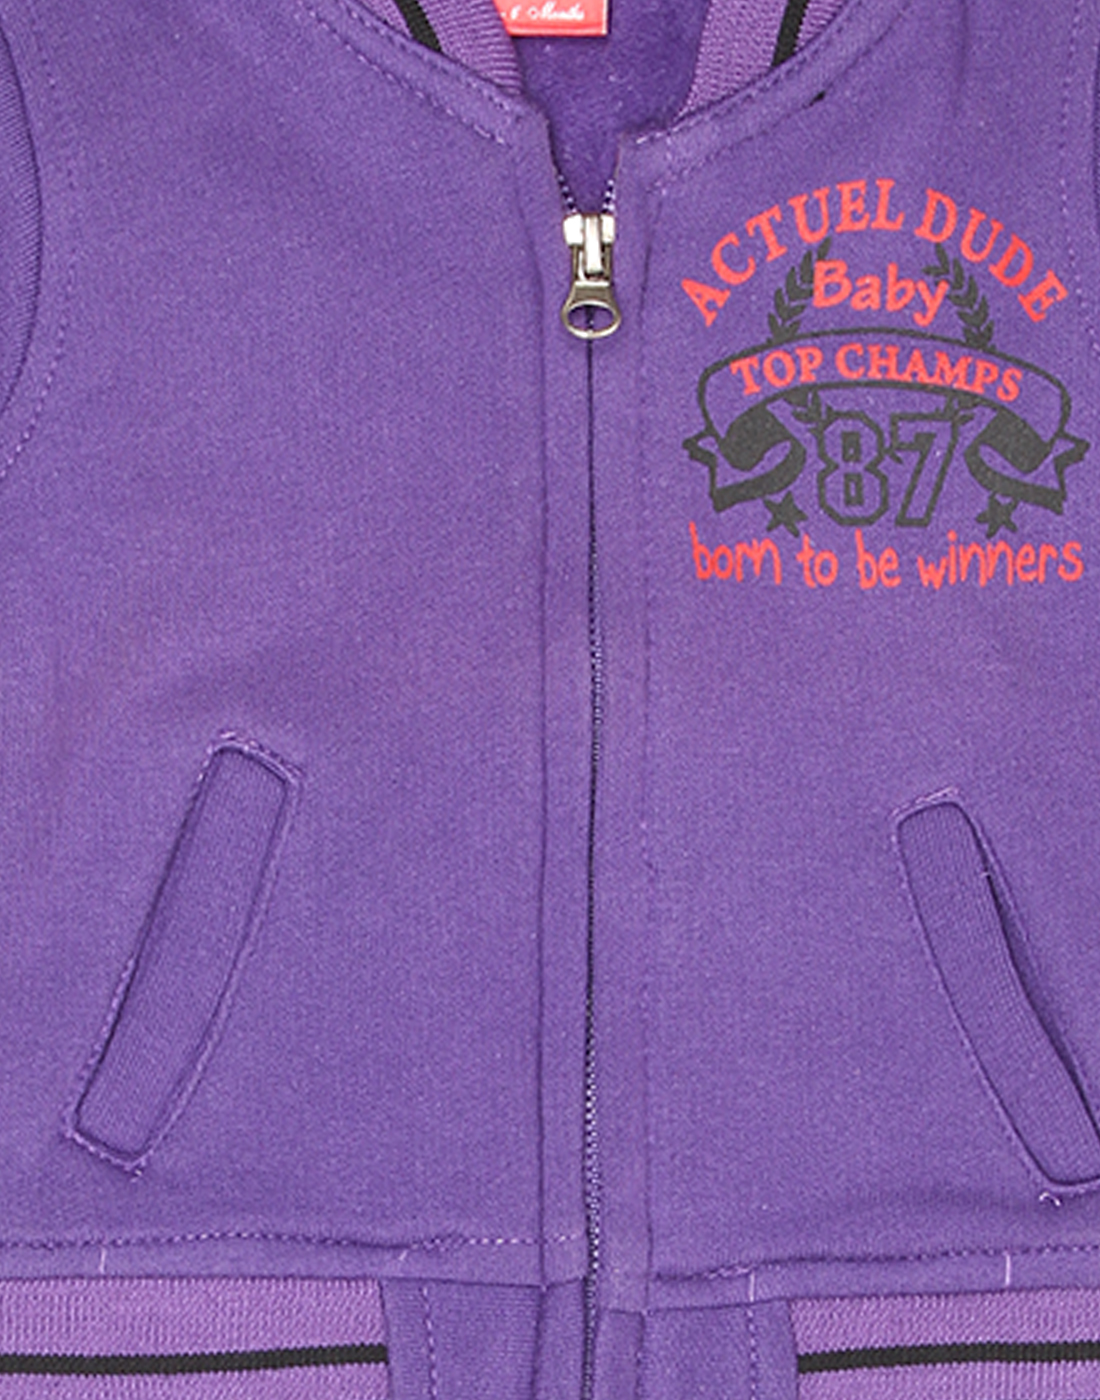 Actuel Boys Casual Wear Purple Sweatshirt